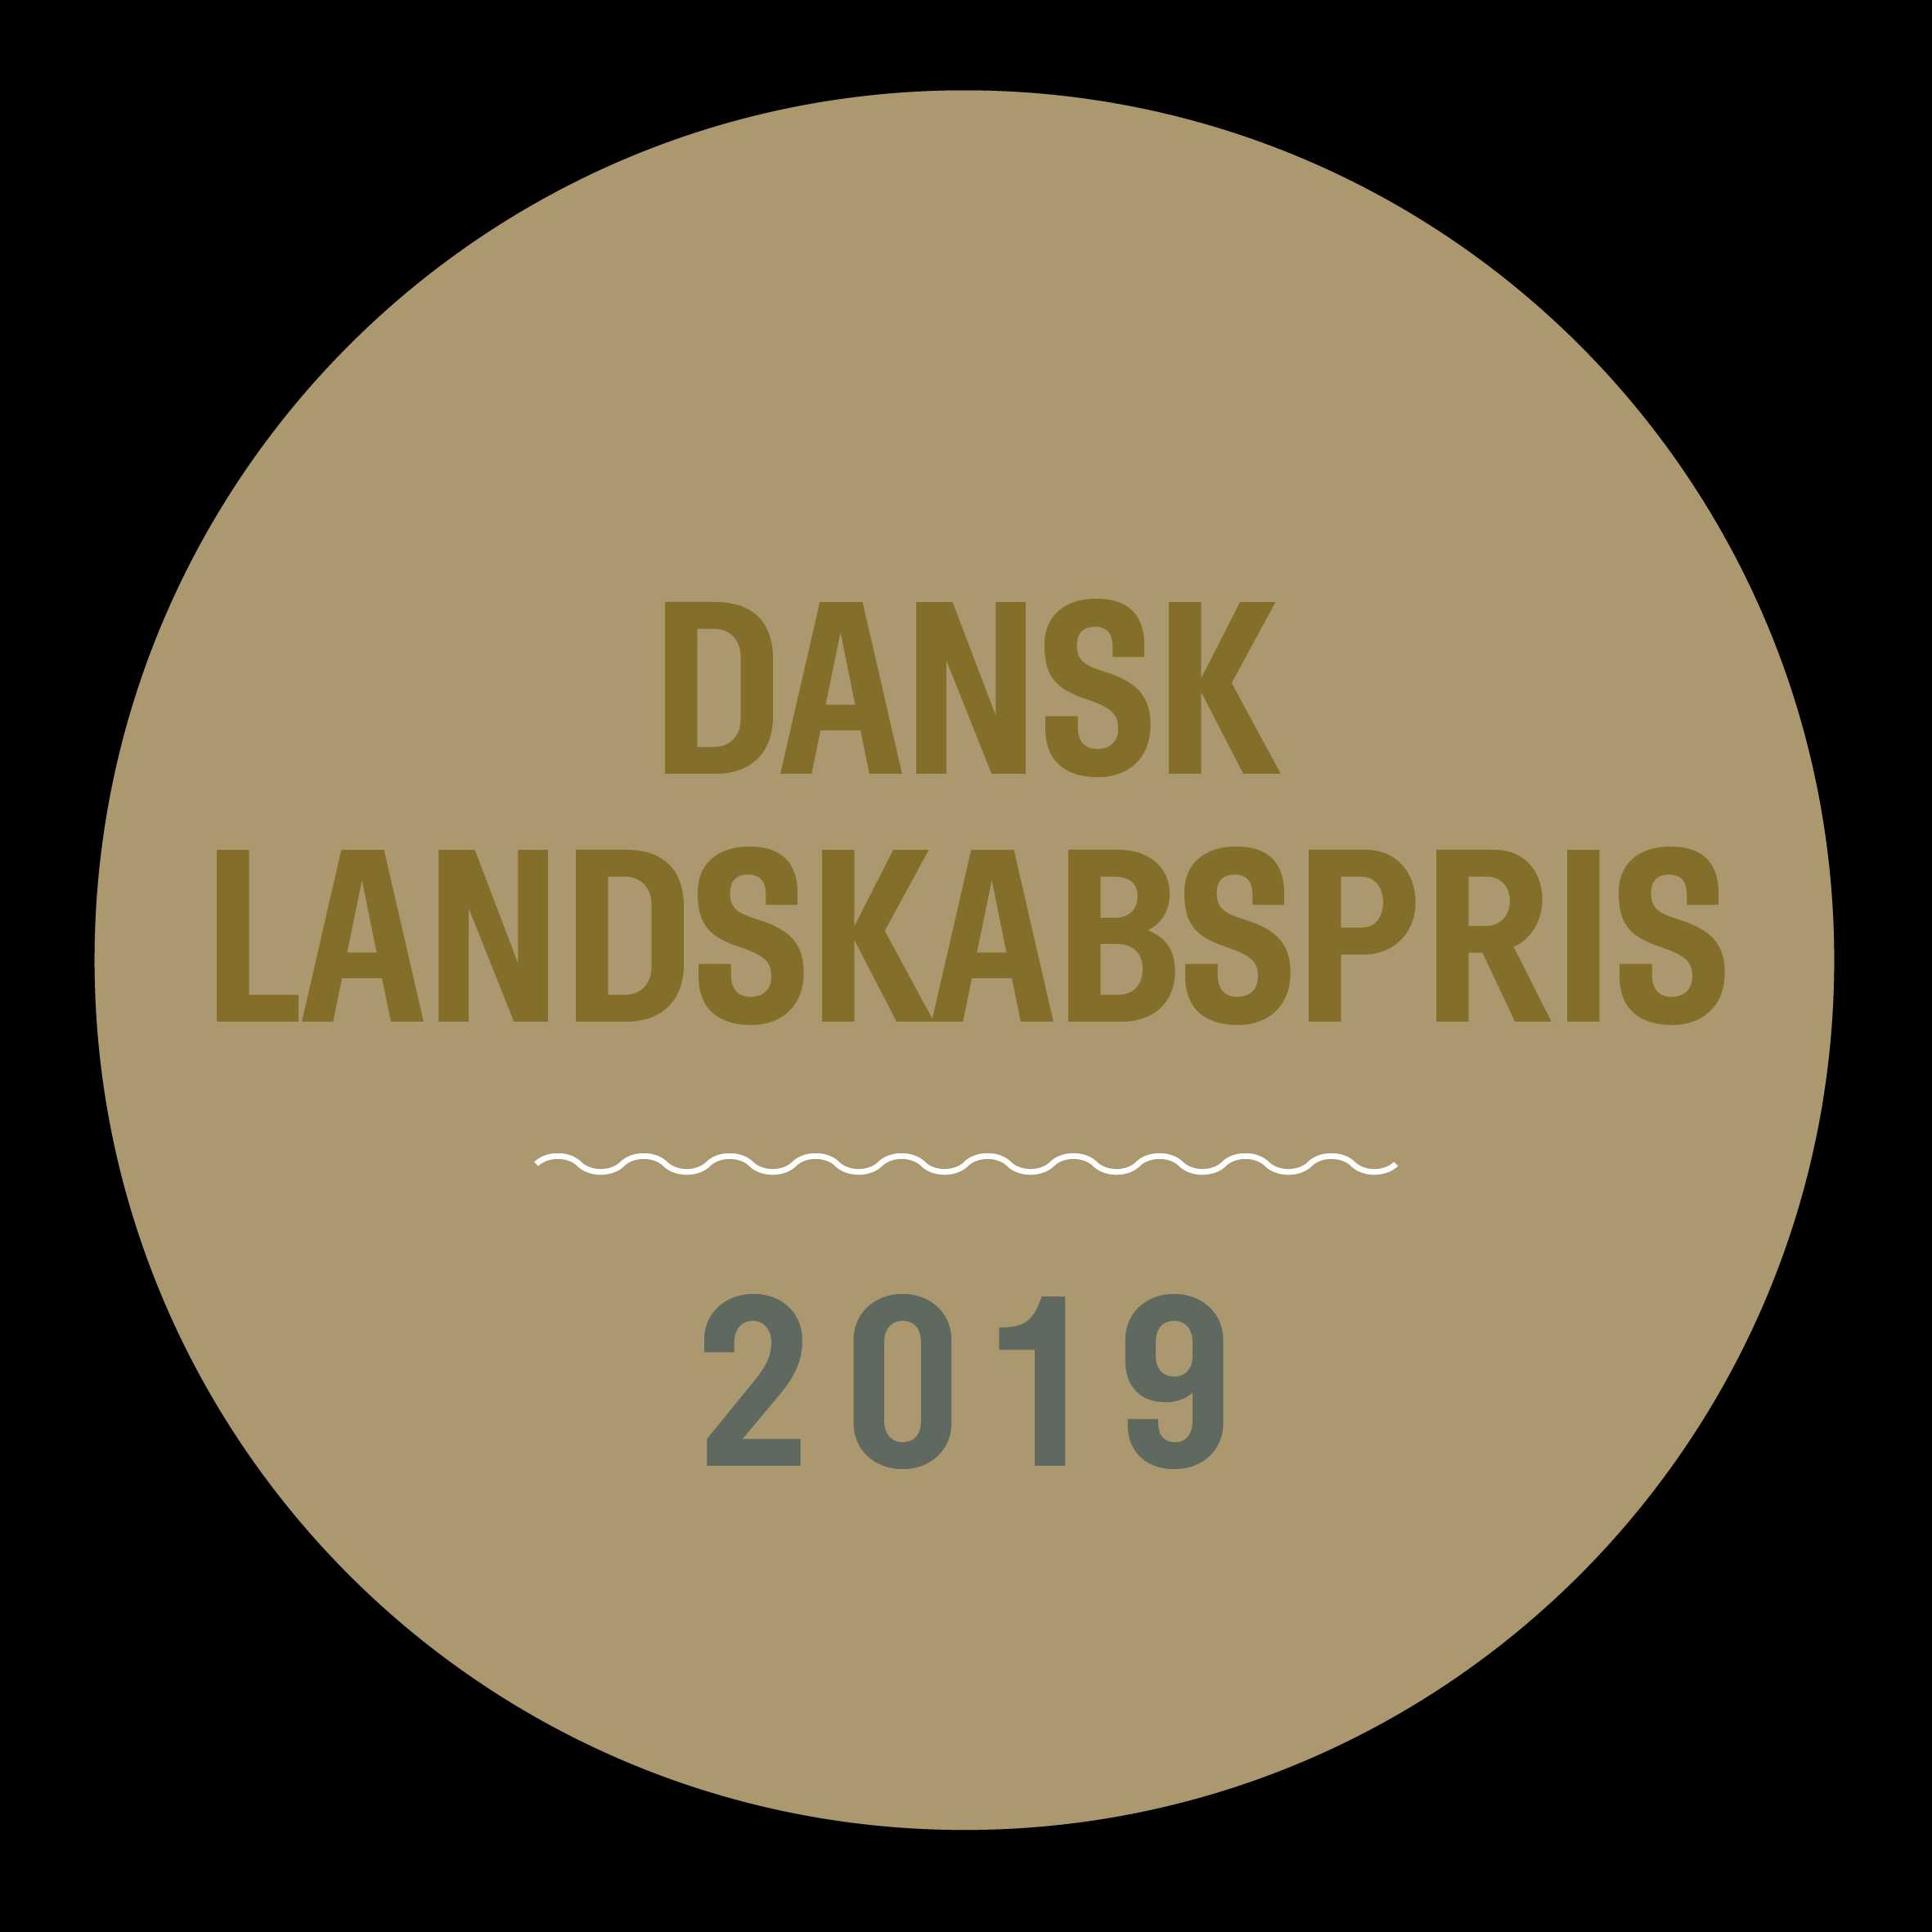 Dansk Landskabspris 2019 Logo